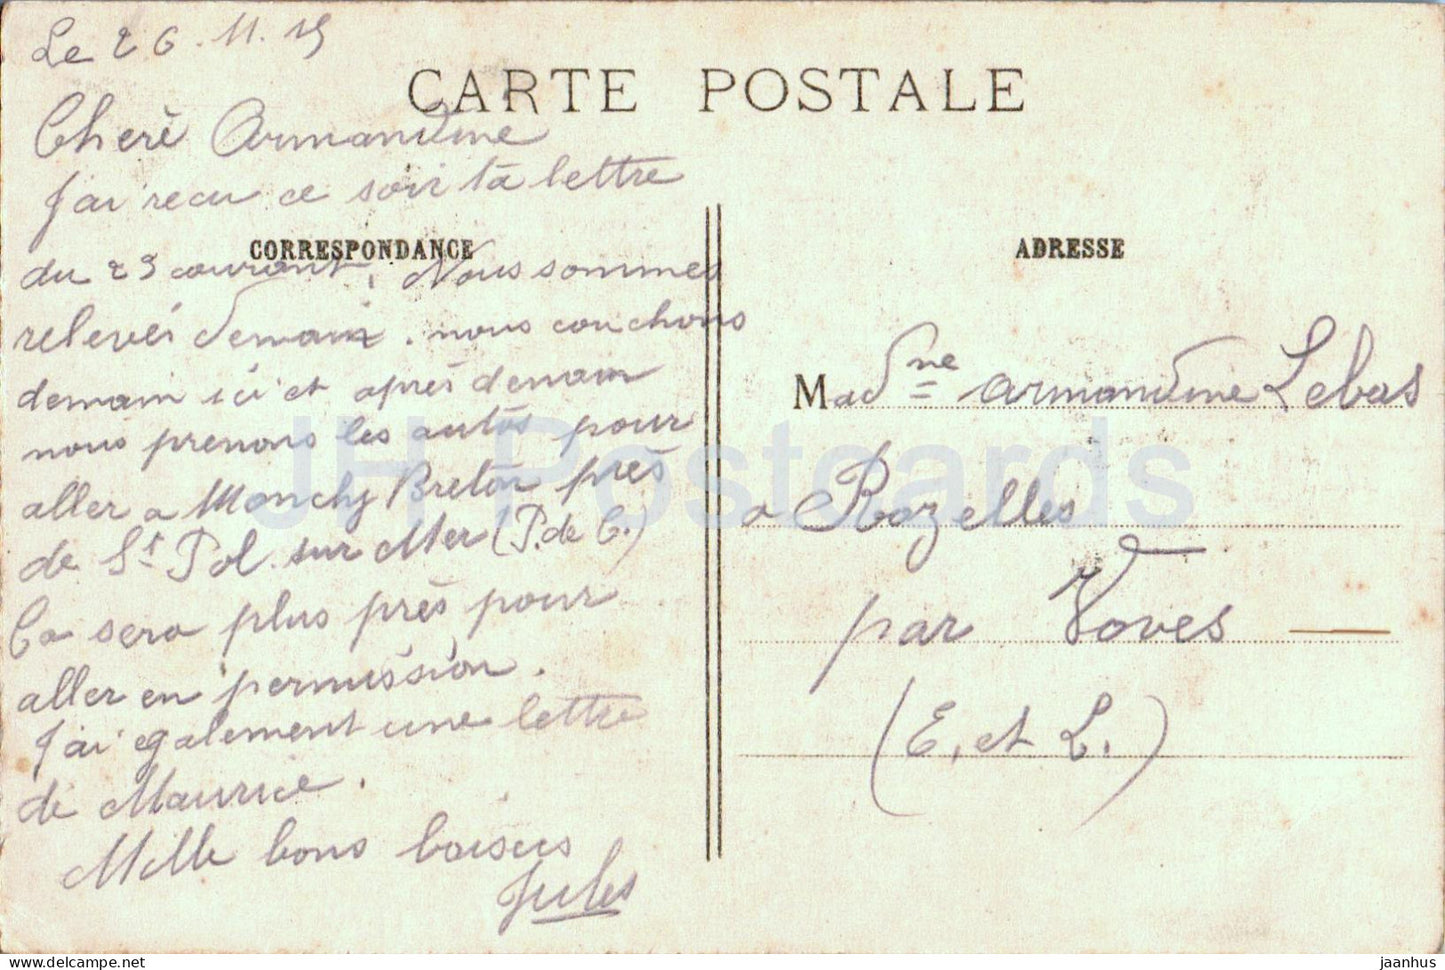 Notre Dame de Lorette - Vierge de la Maison de Lorette - Pelerinage - alte Postkarte - 1919 - Frankreich - gebraucht 